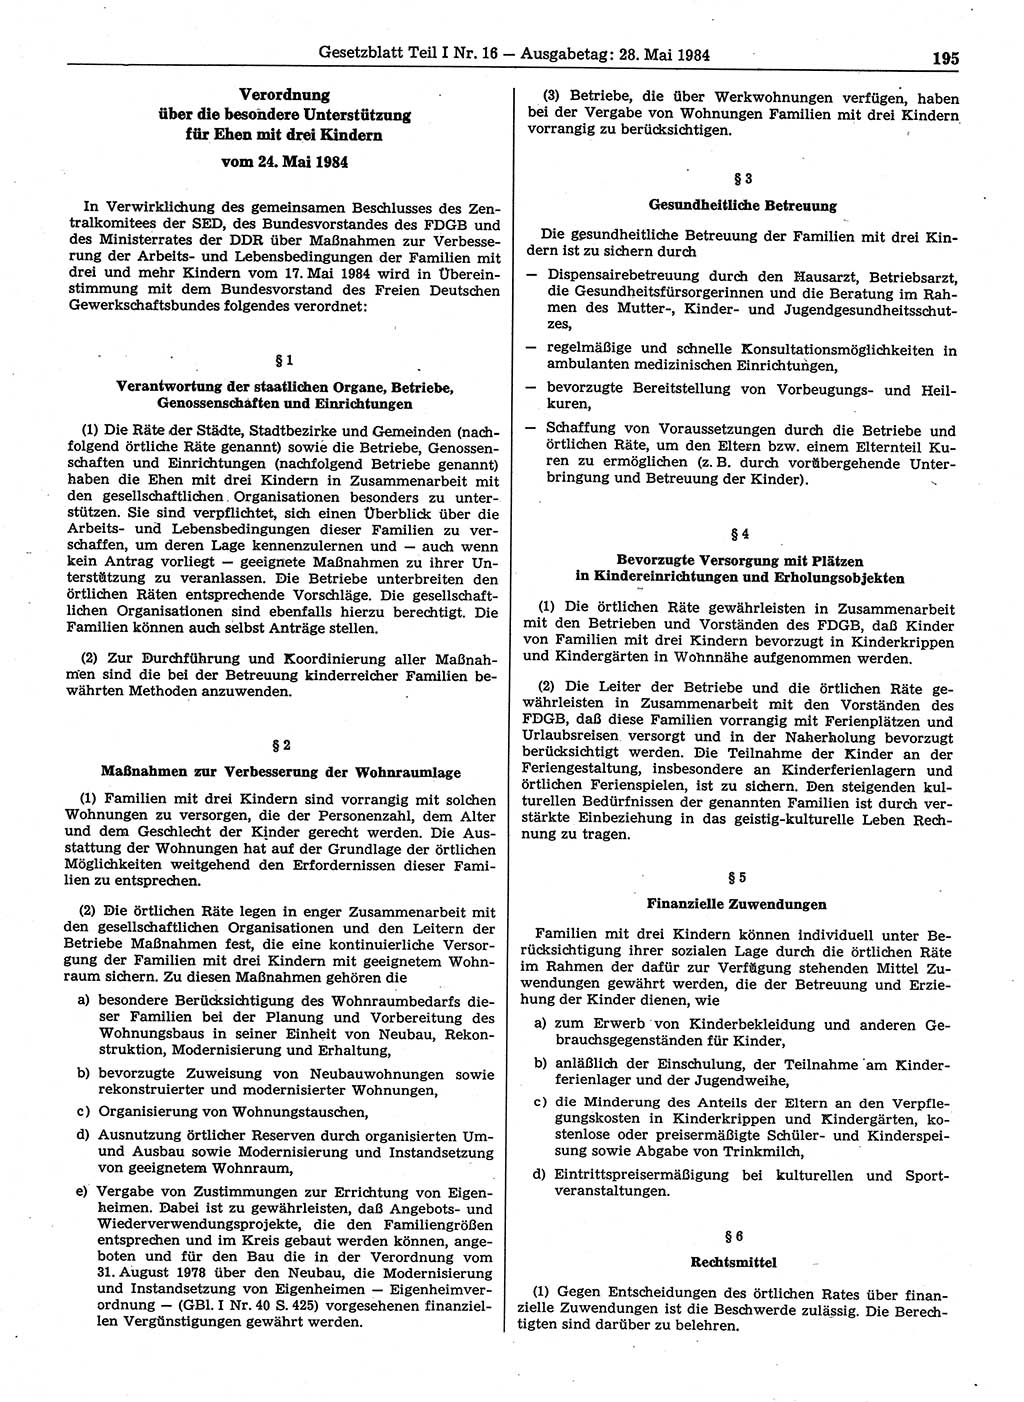 Gesetzblatt (GBl.) der Deutschen Demokratischen Republik (DDR) Teil Ⅰ 1984, Seite 195 (GBl. DDR Ⅰ 1984, S. 195)